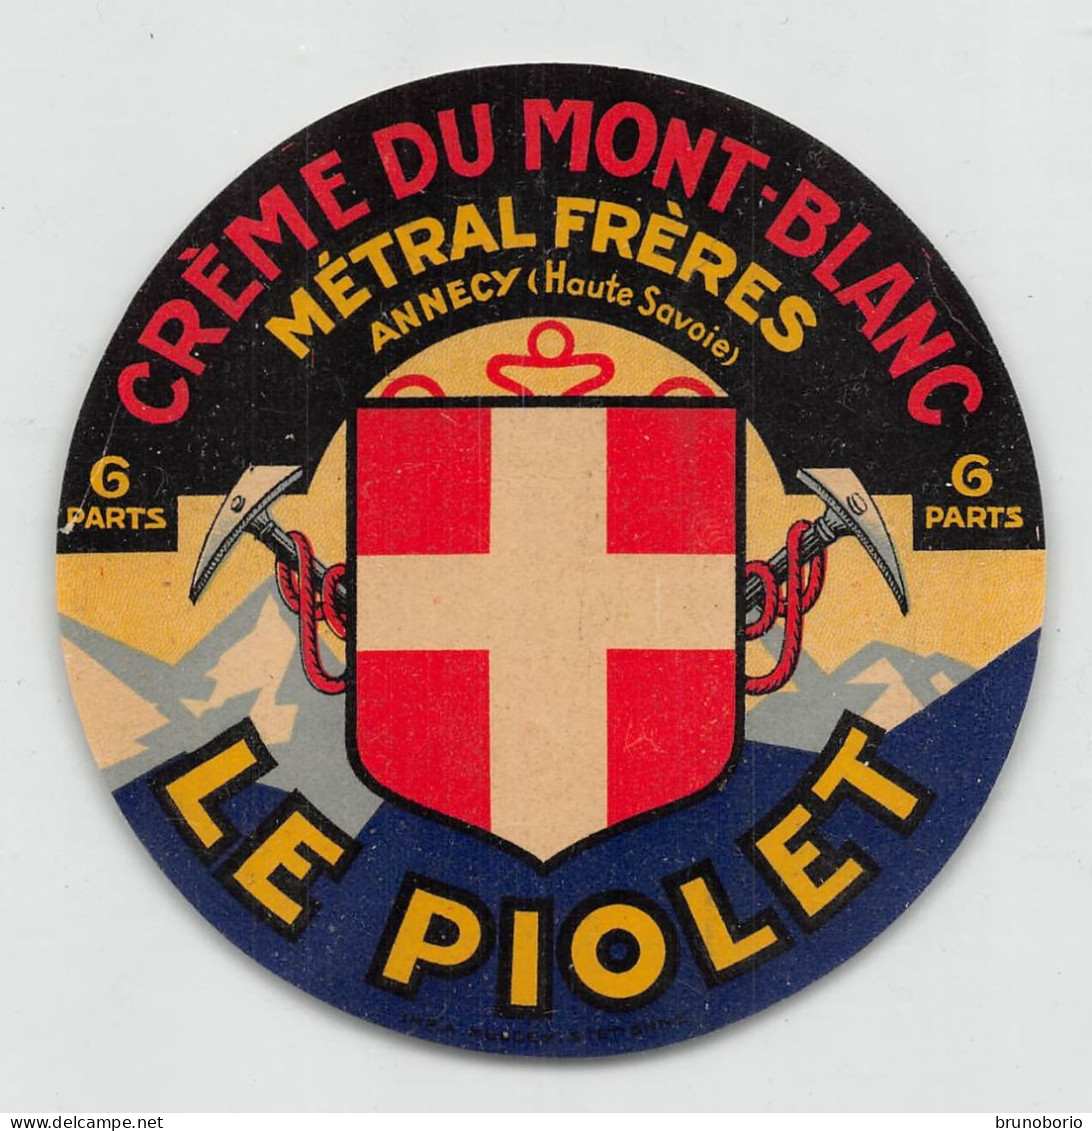 00116 "CREME DU MONT-BLANC - METRAL FRERES - LE PIOLET - 6 PARTS"  ETICH. ORIG STEMMA, PICOZZE - Quesos